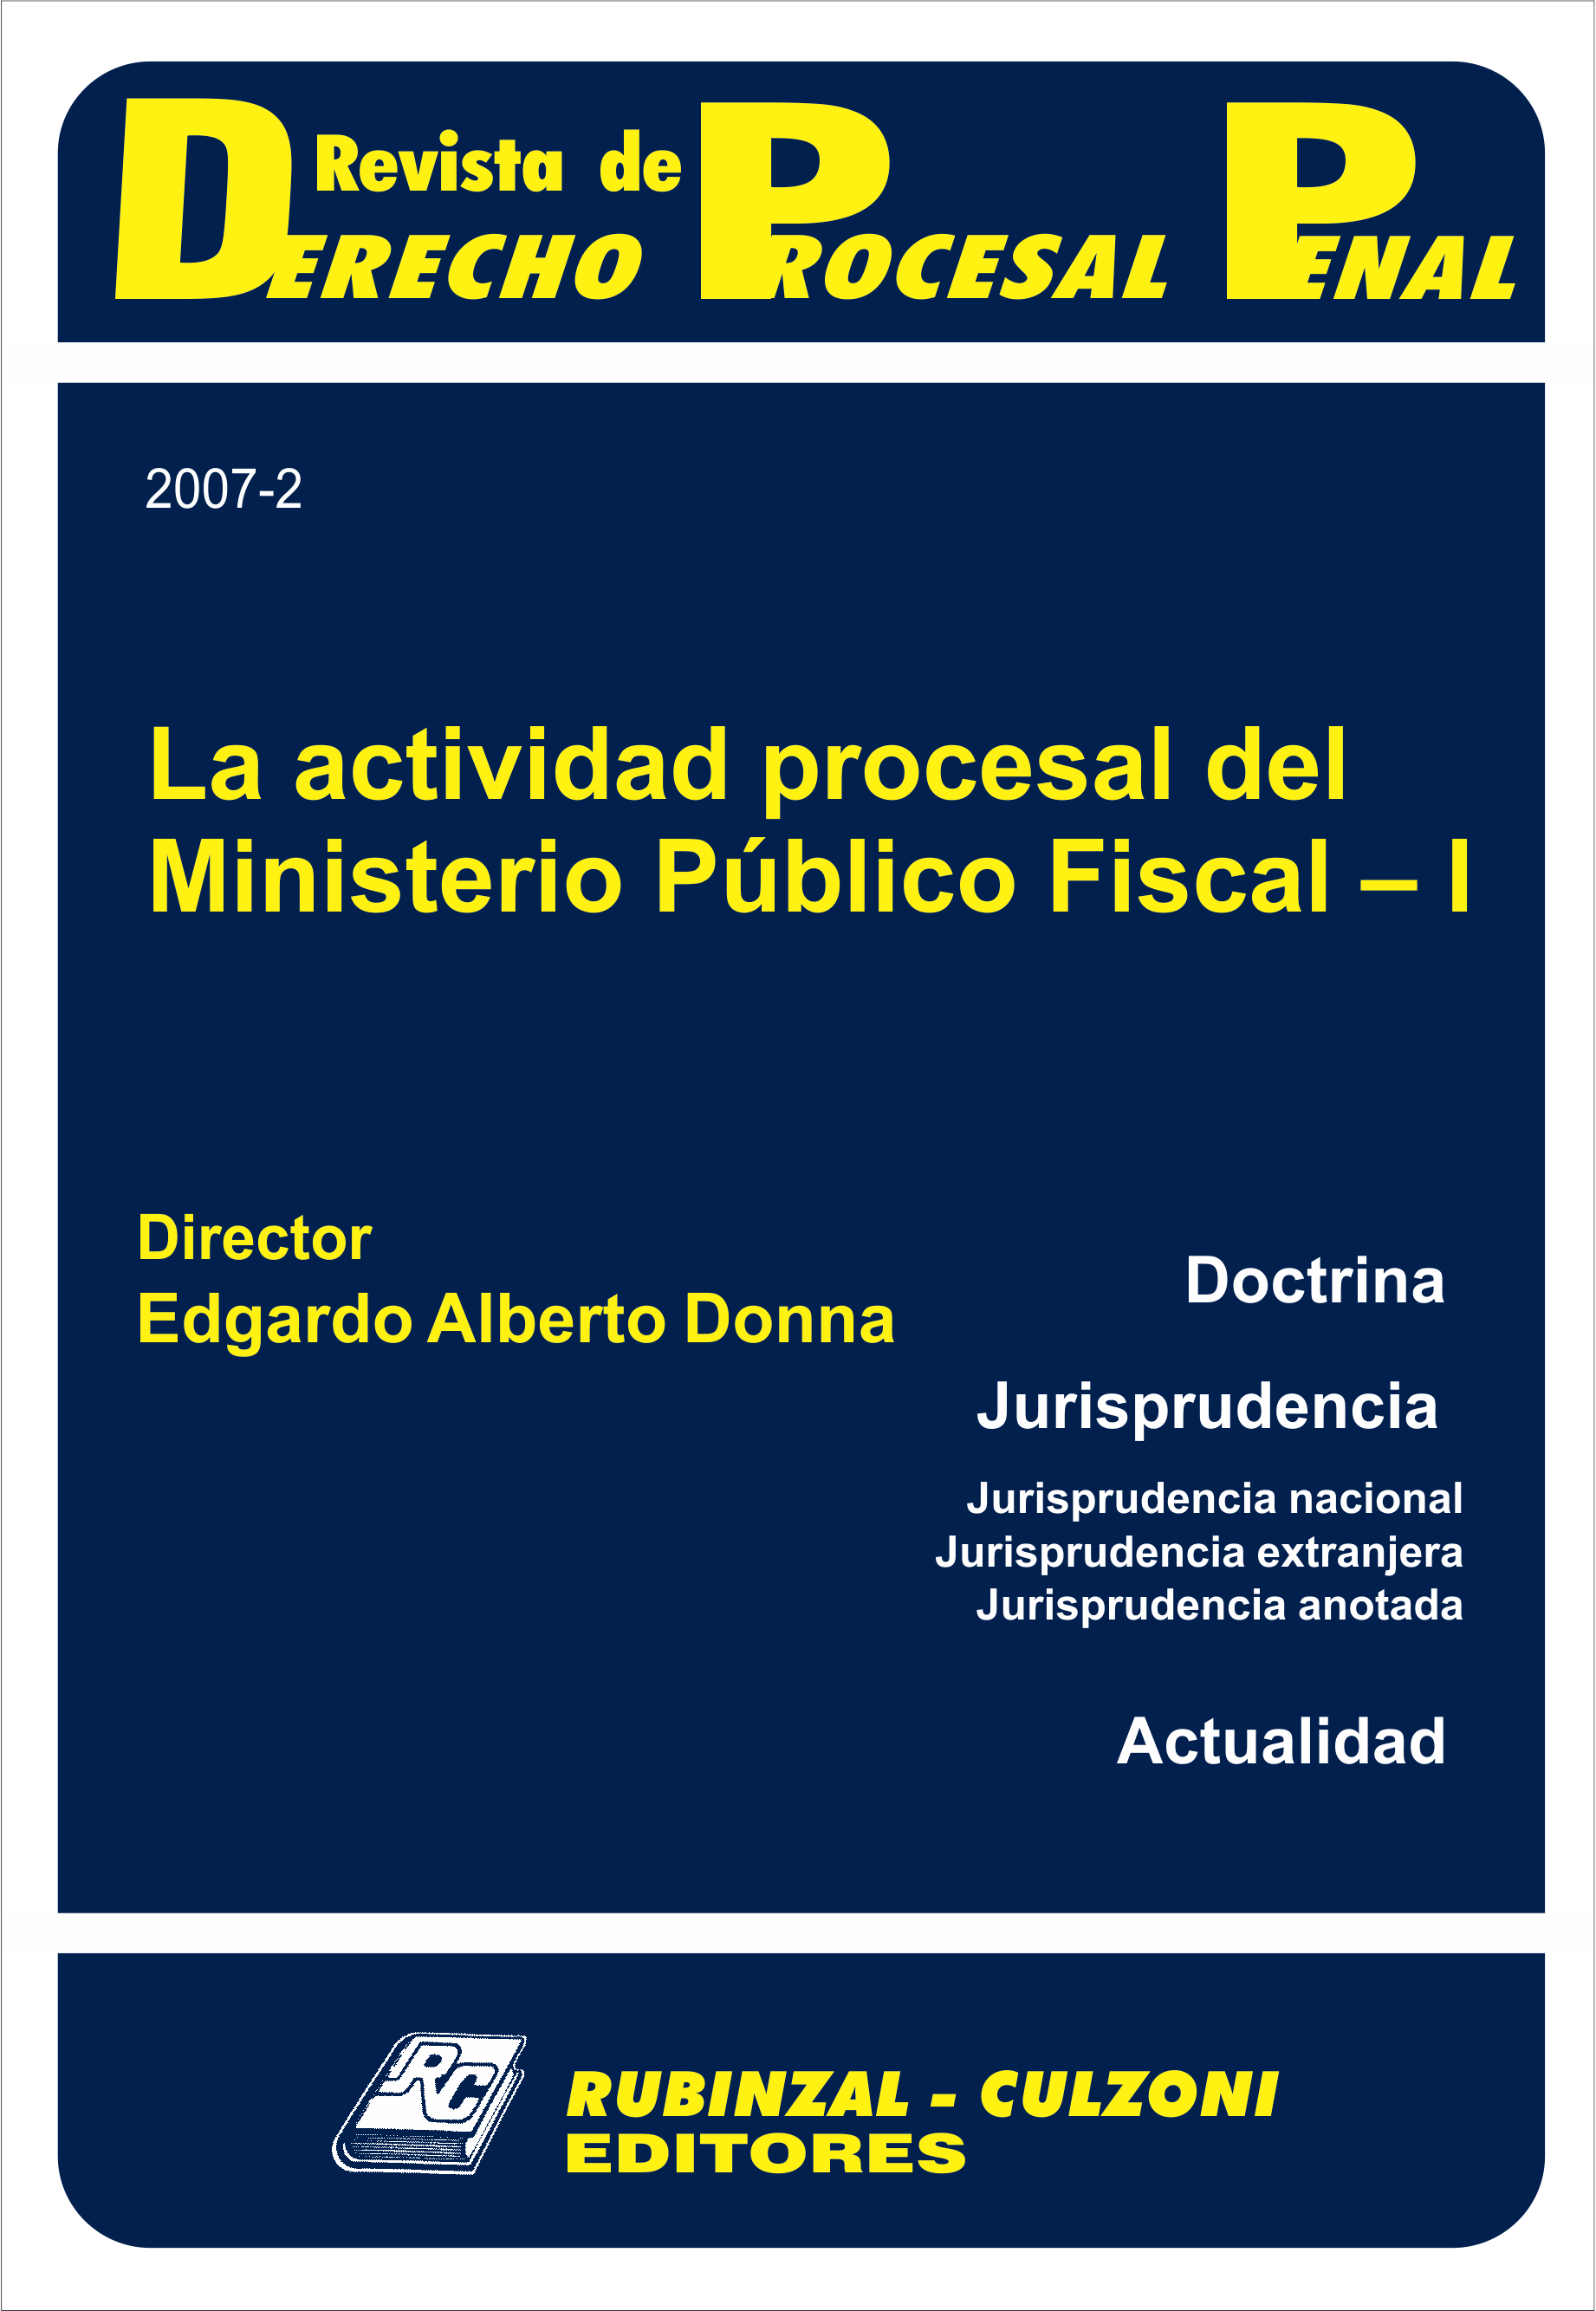 Revista de Derecho Procesal Penal - La actividad procesal del Ministerio Público Fiscal - I.